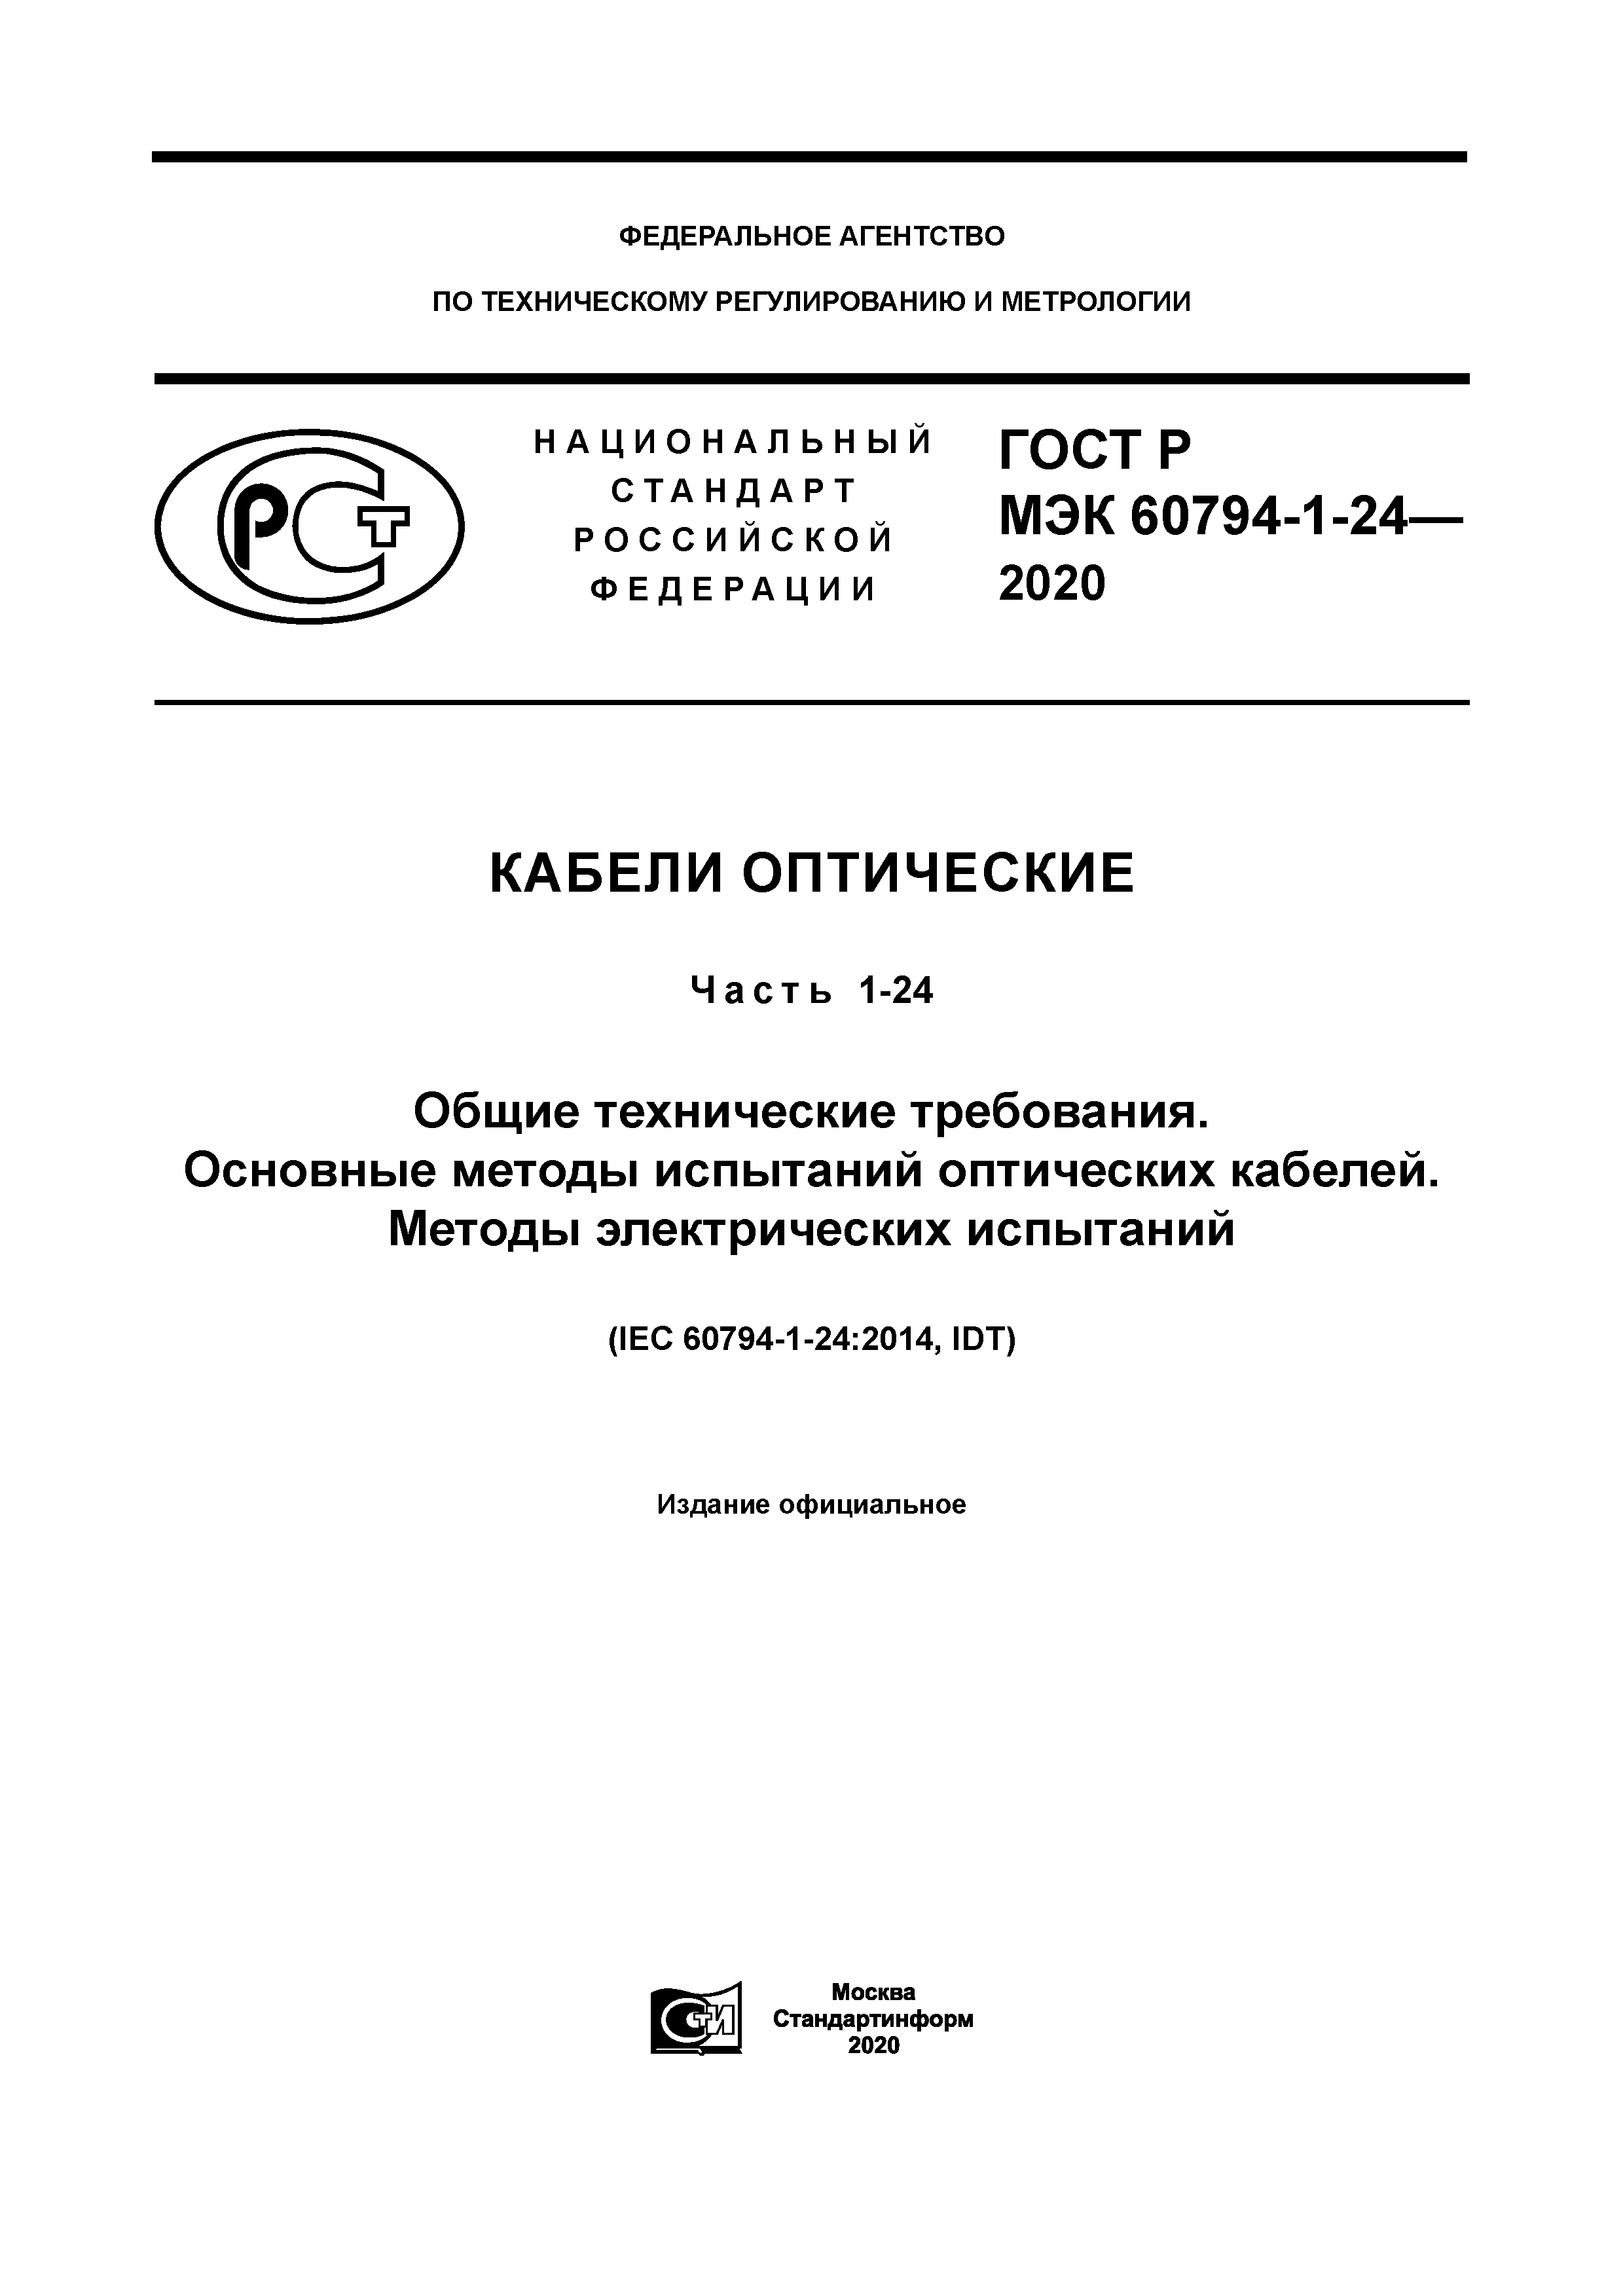 ГОСТ Р МЭК 60794-1-24-2020